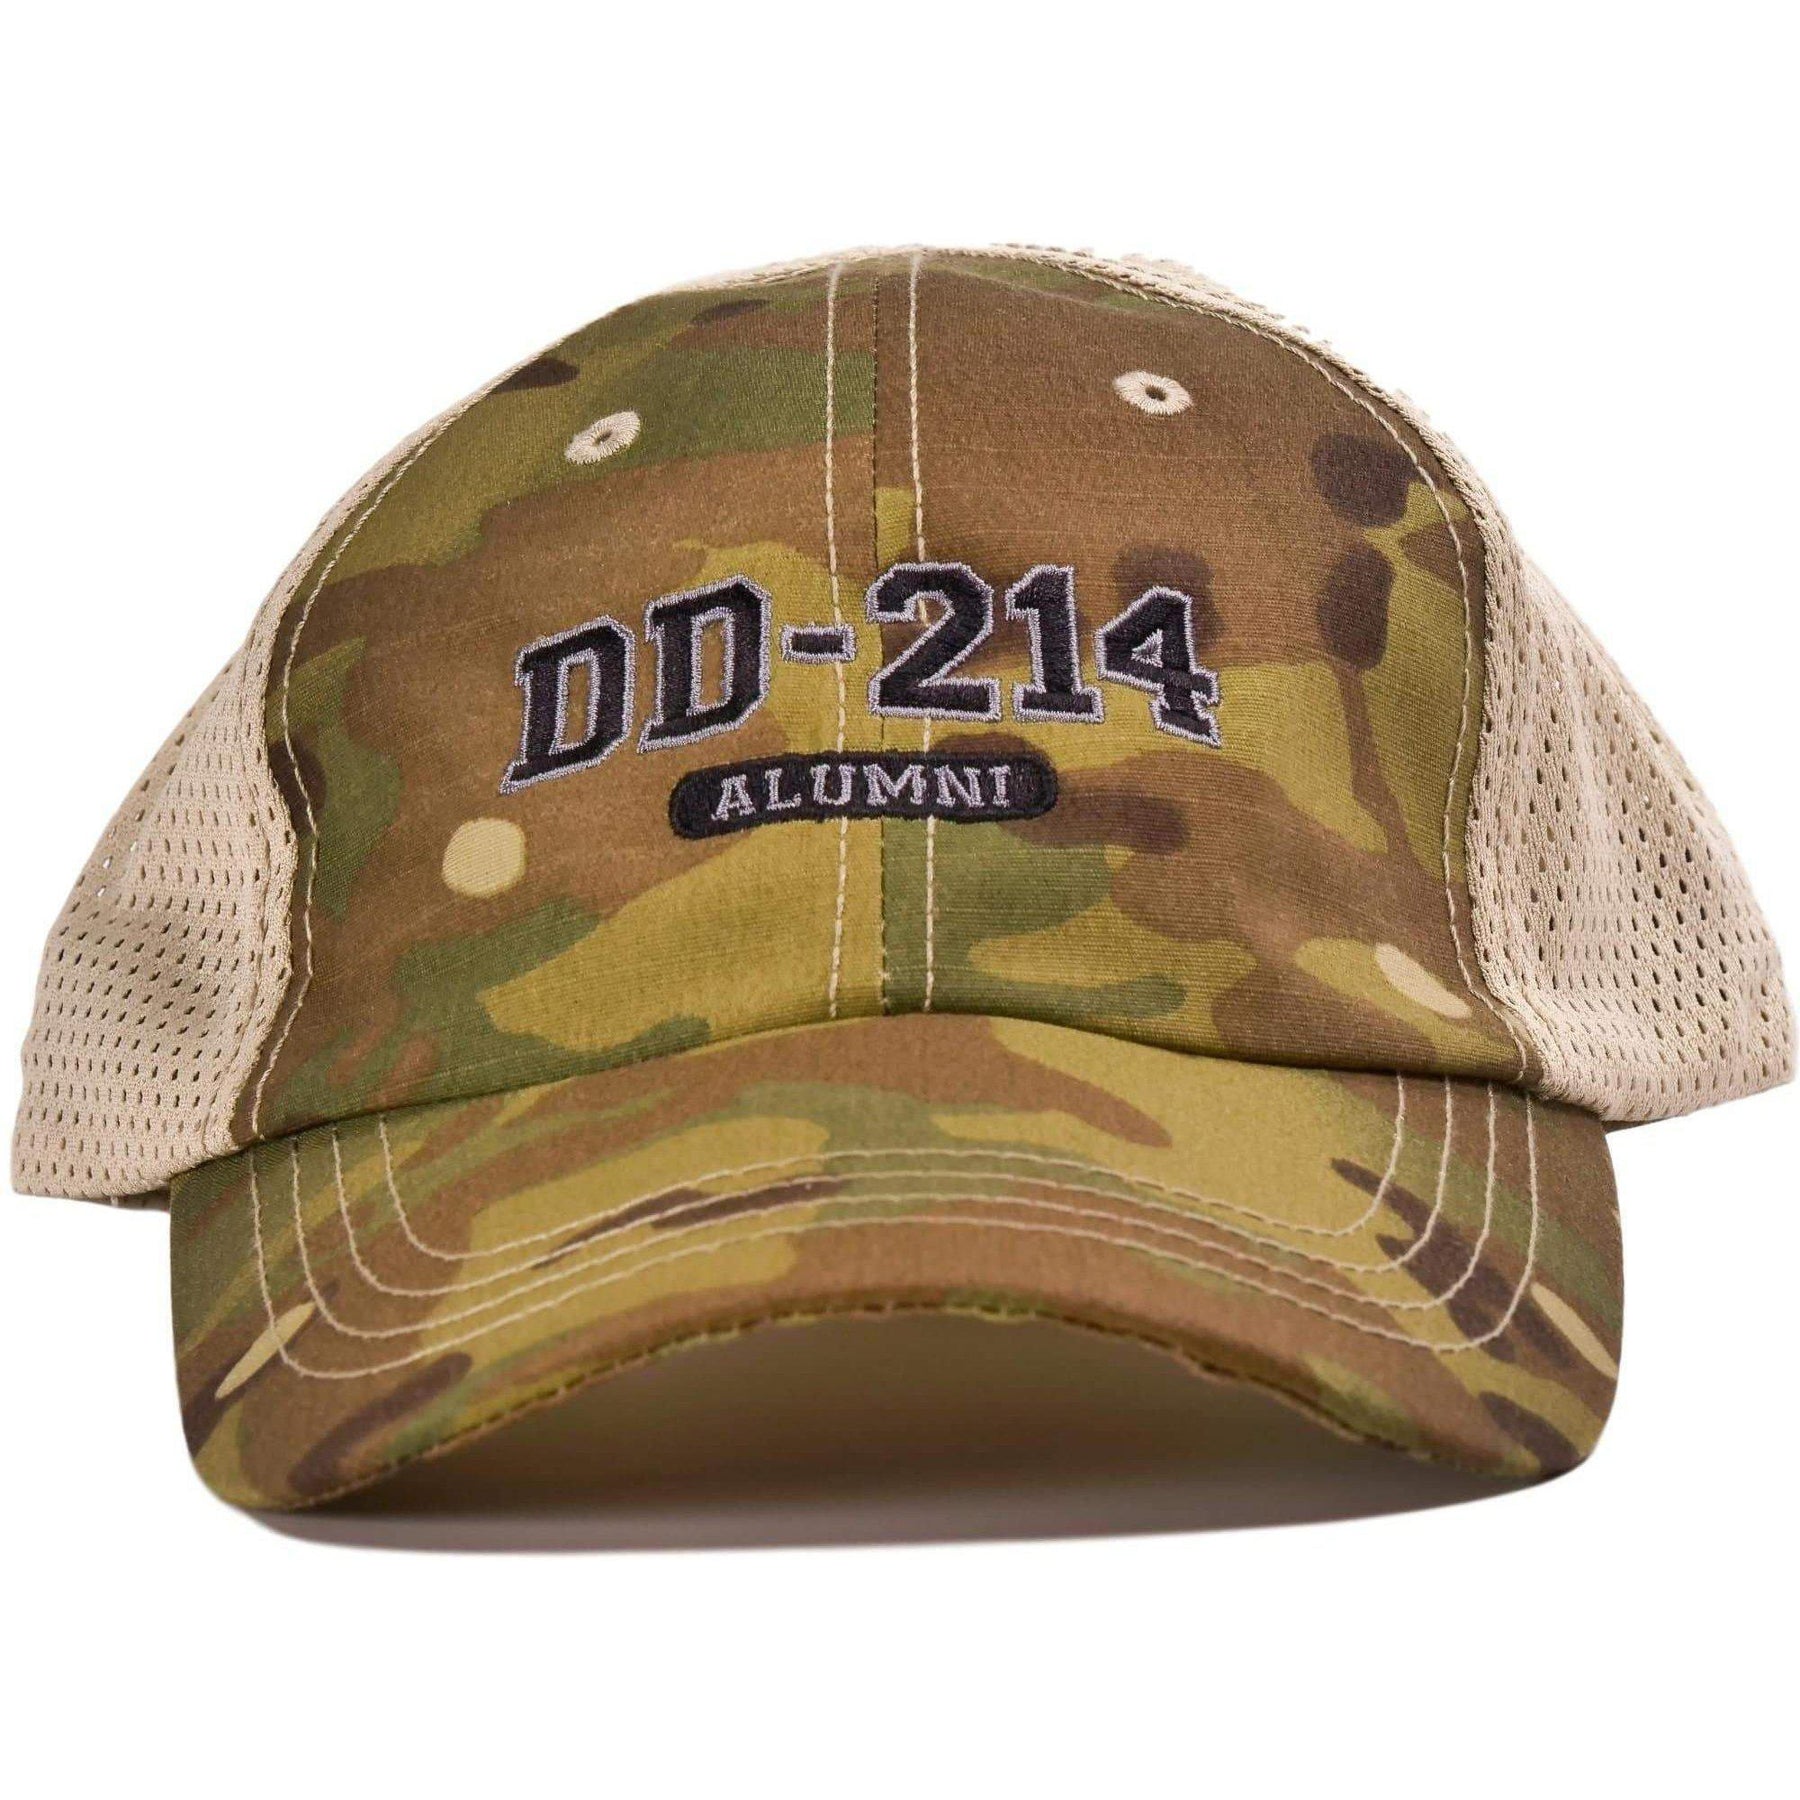 DD-214 Multicam Mesh Back Hat – 11Bravos.com